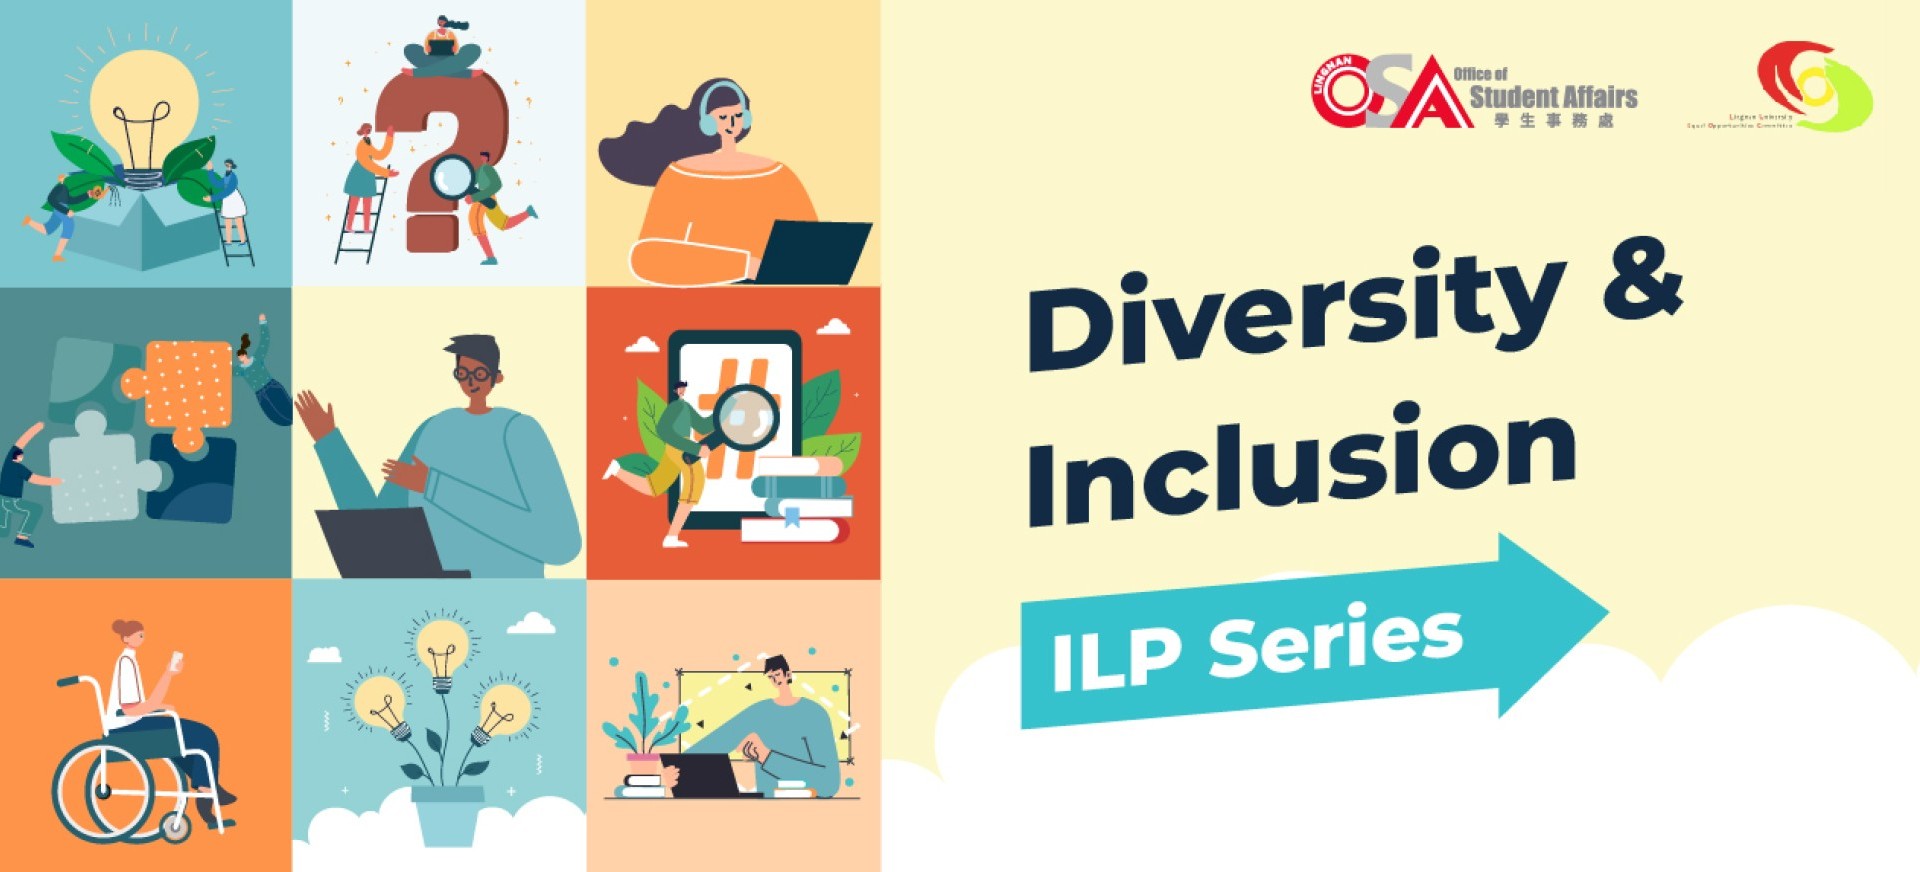 Diversity & Inclusion ILP Series